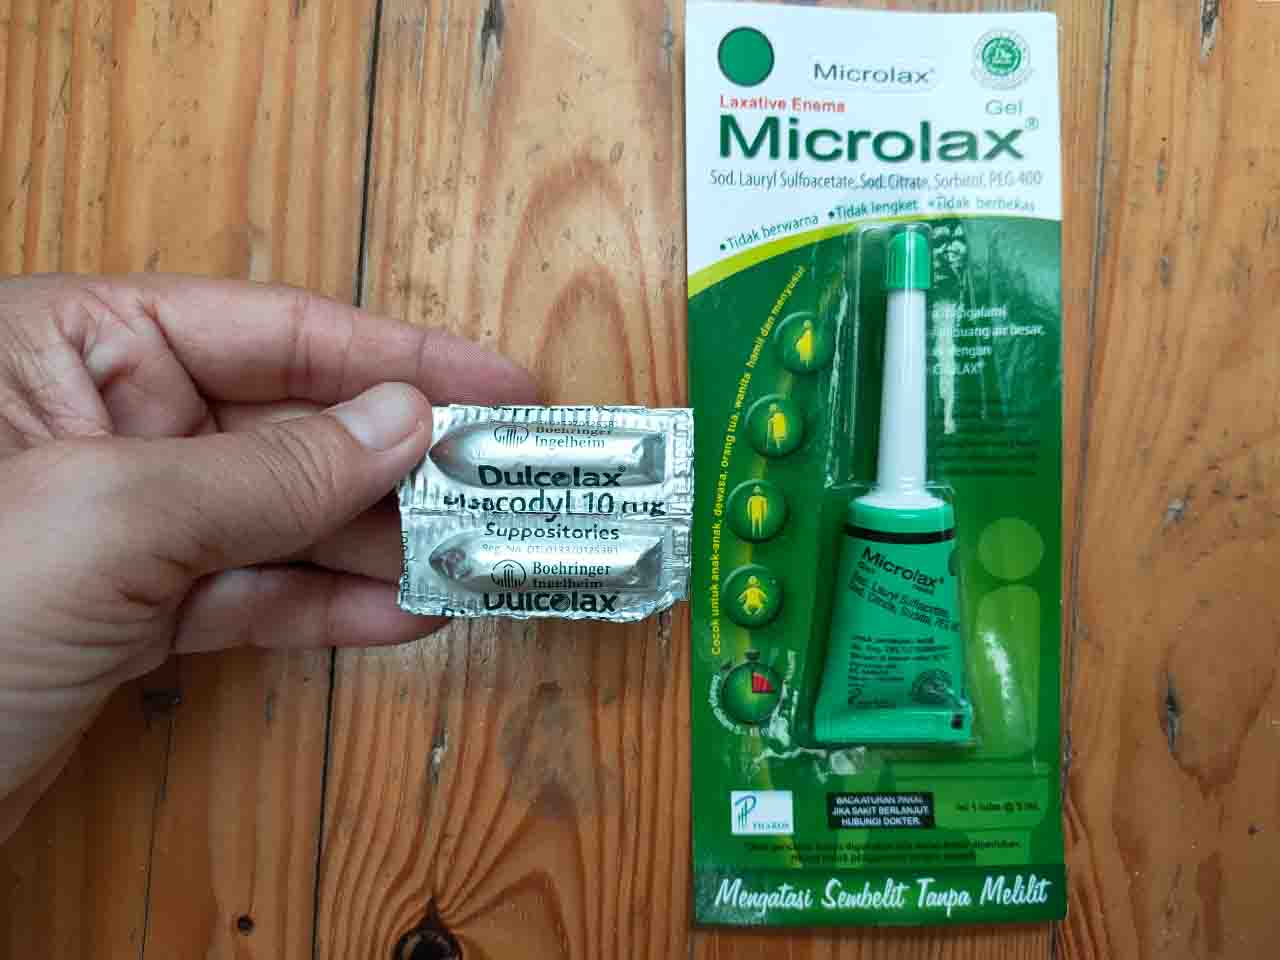 Harga Microlax di Indomaret, Obat Pelancar Buang Air Besar